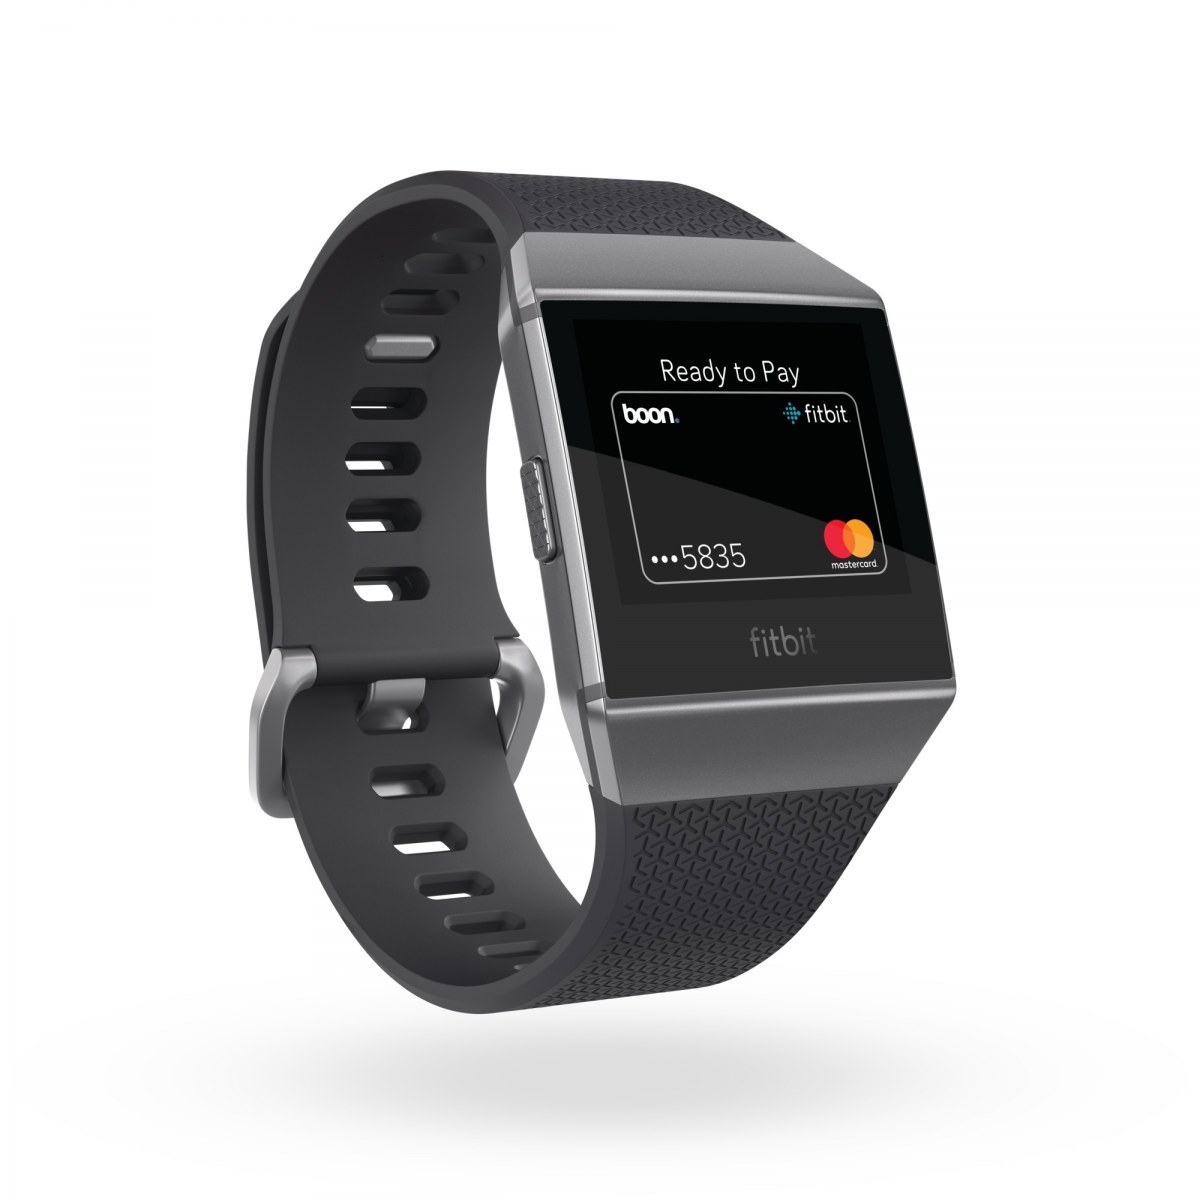 Fitbit VISUAL ASSET | FitBit | มาสเตอร์การ์ดร่วมกับนาฬิกาอัจฉริยะฟิตบิท 3 รุ่นใหม่ รองรับการใช้งานฟิตบิต เพย์